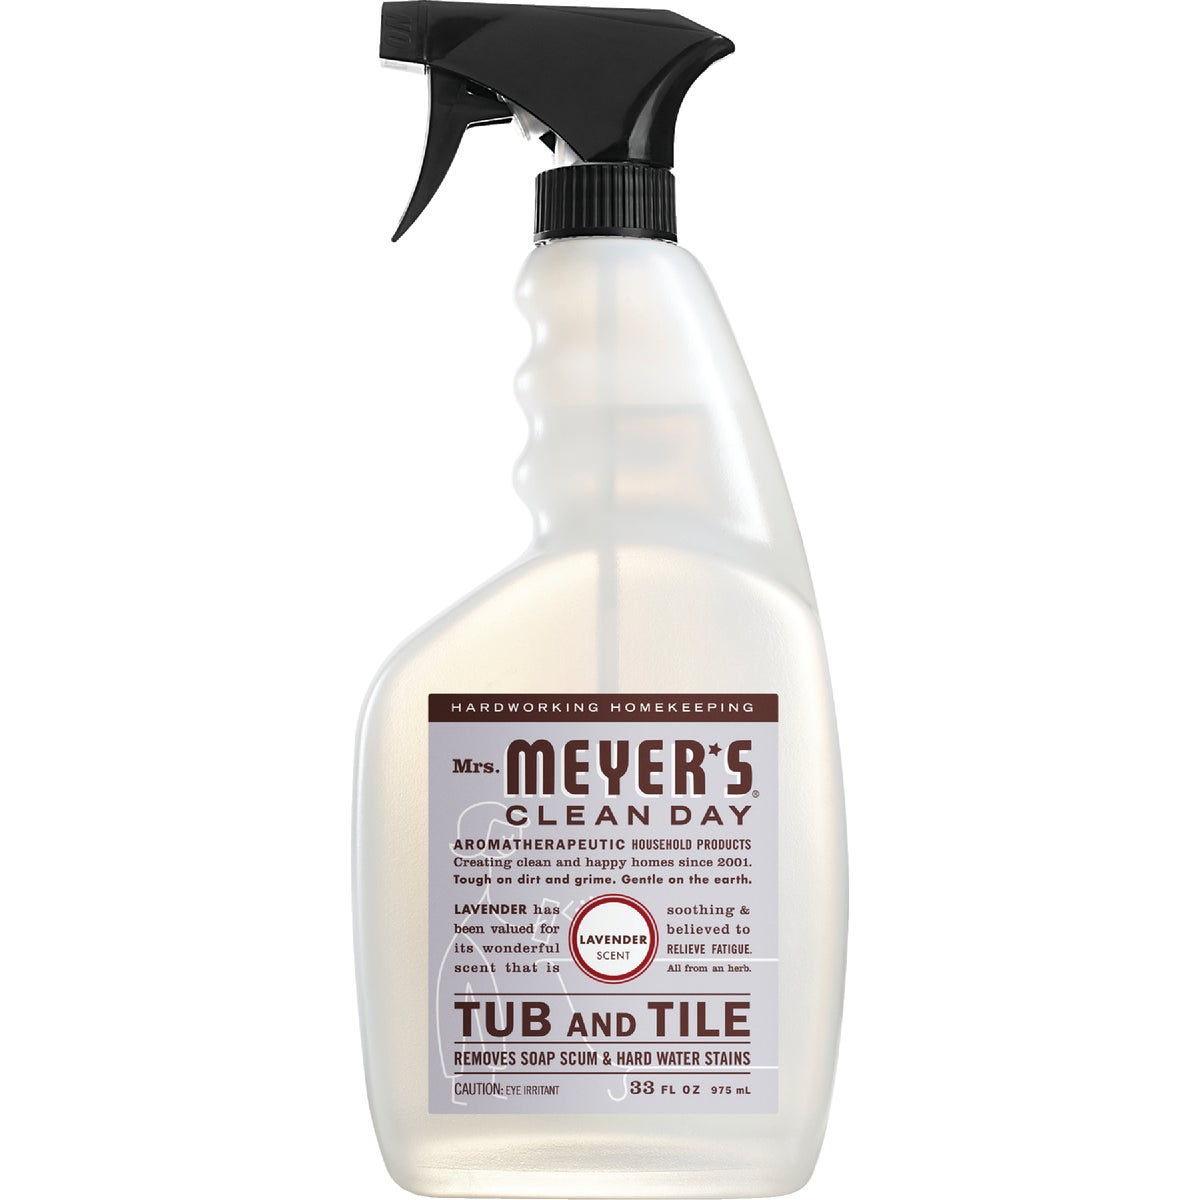 Mrs. Meyer's Clean Day 33 Oz. Lavender Tub & Tile Bathroom Cleaner